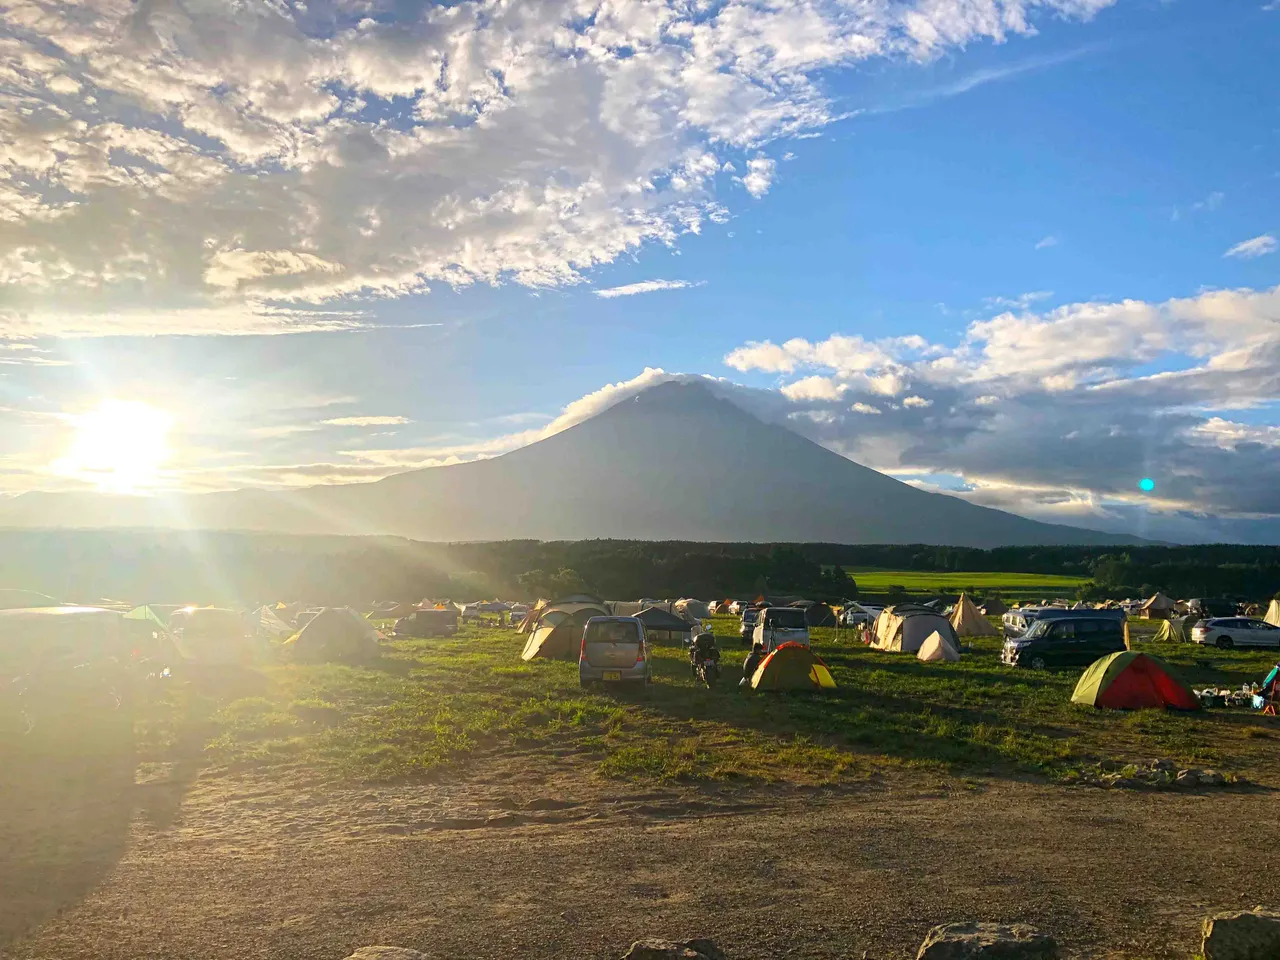 Camping at Mt. Fuji.jpg